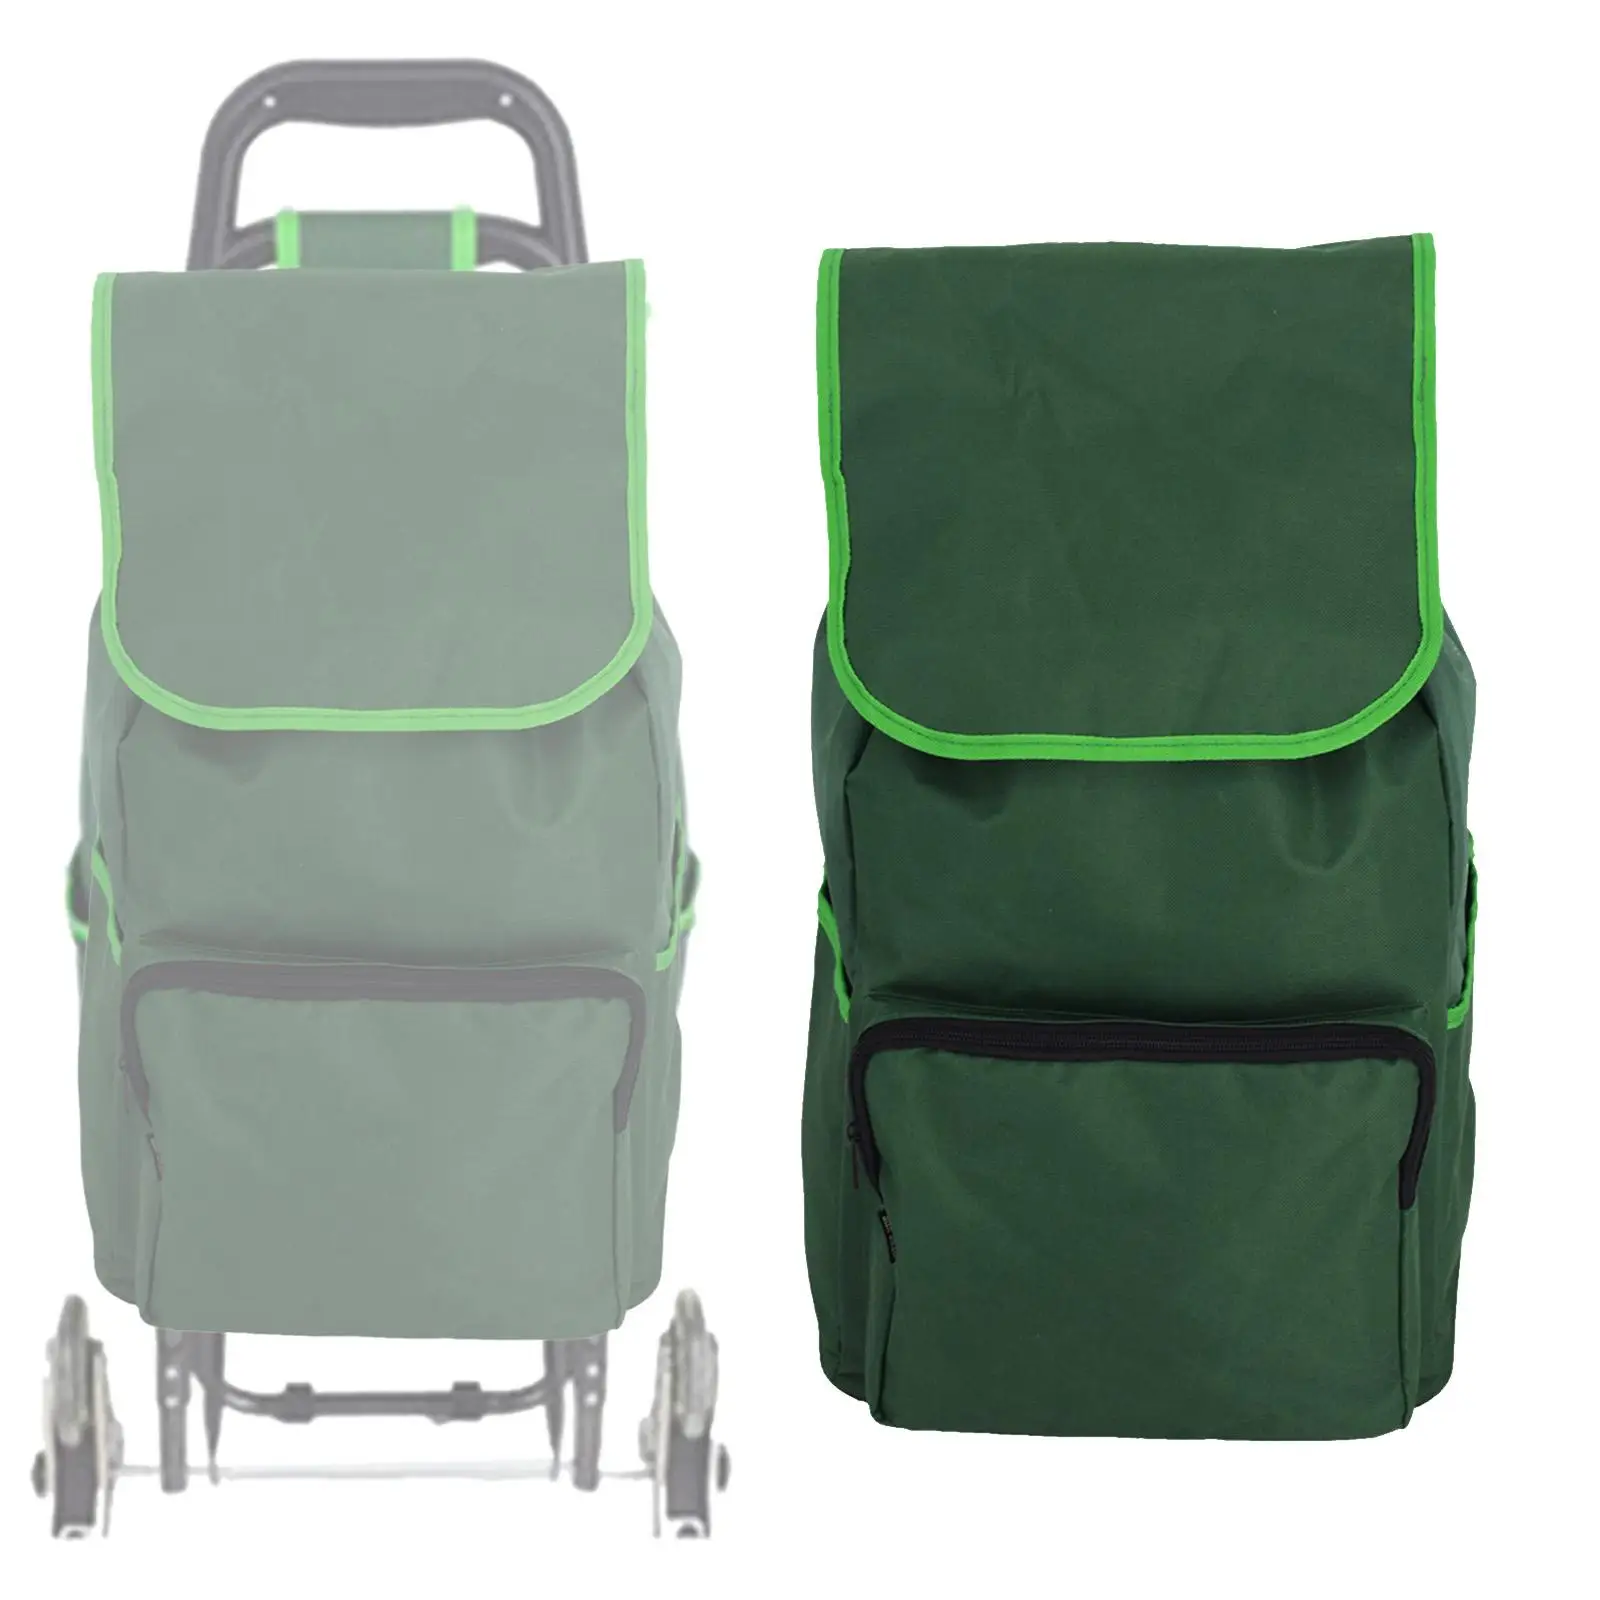 Portable Shopping Cart Bag Reusable Shopping Spare Bag for Utility Cart